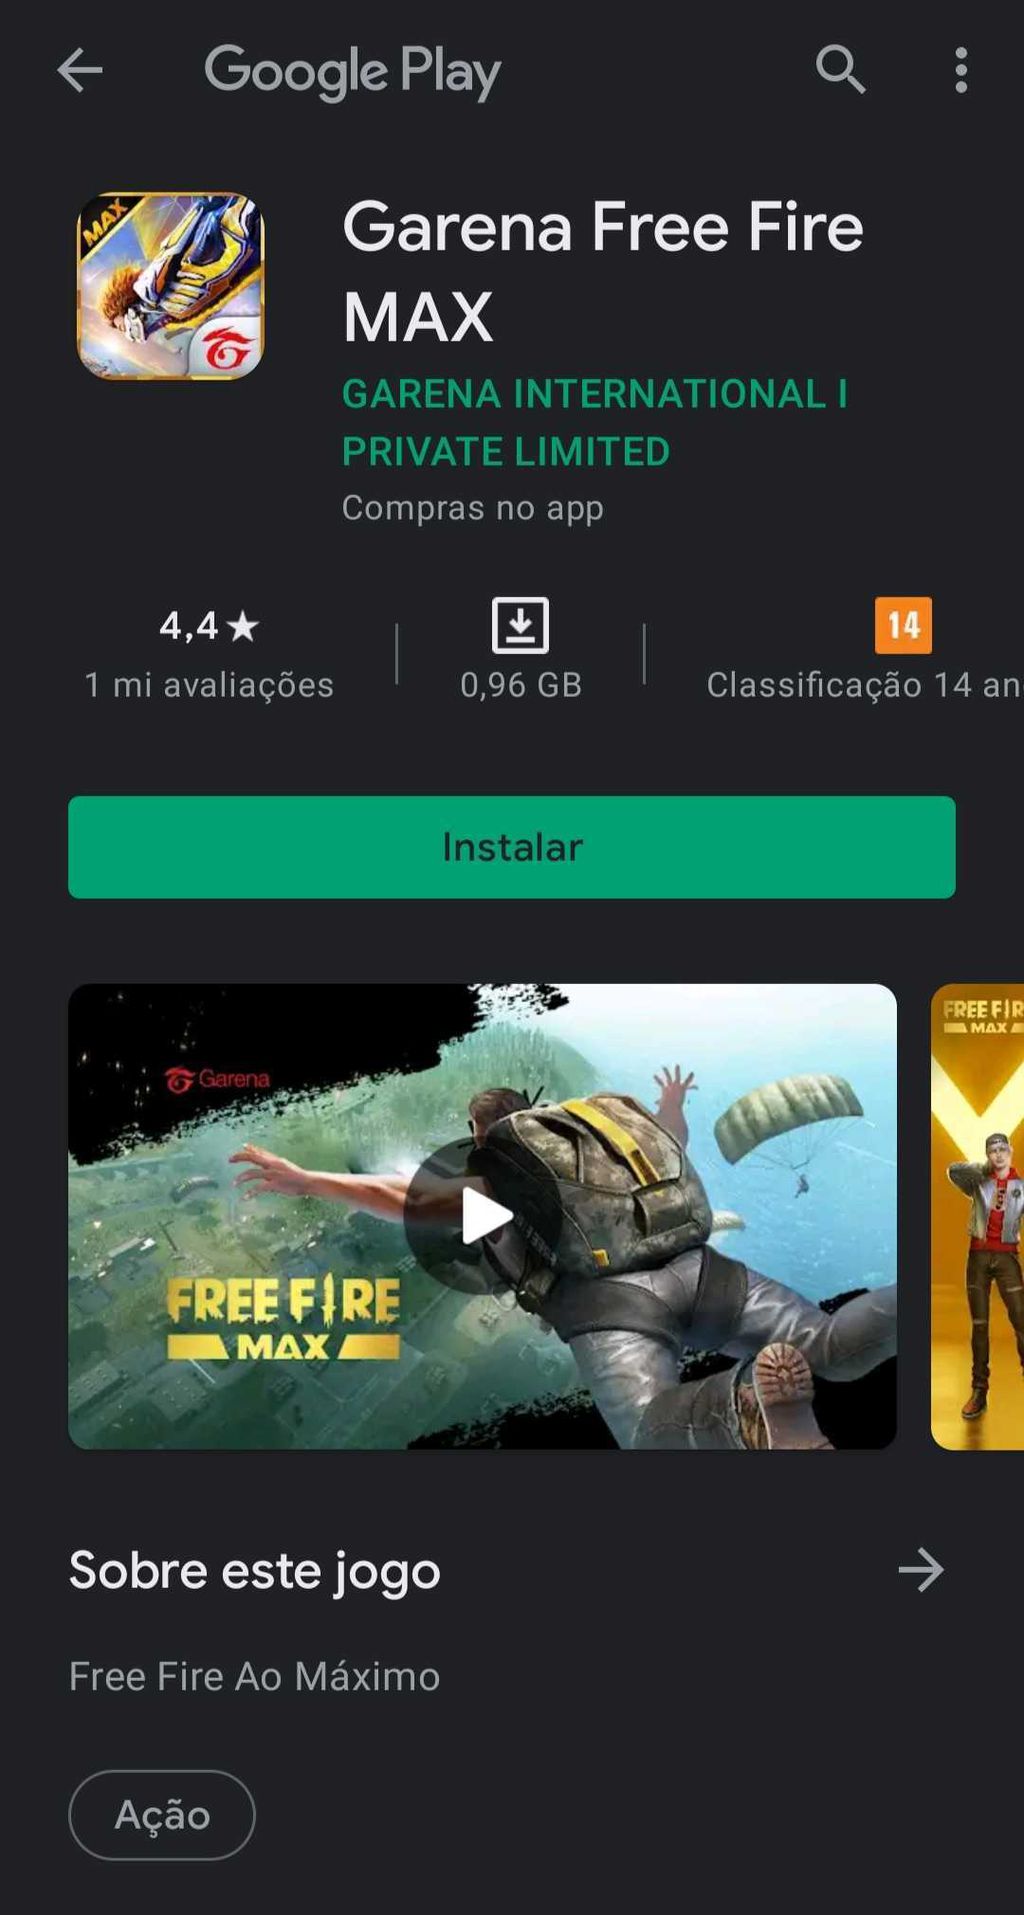 E Q Garena Free Fire MAX Garena International I Compras no app Instalar Sua  resenha Andrico gamer